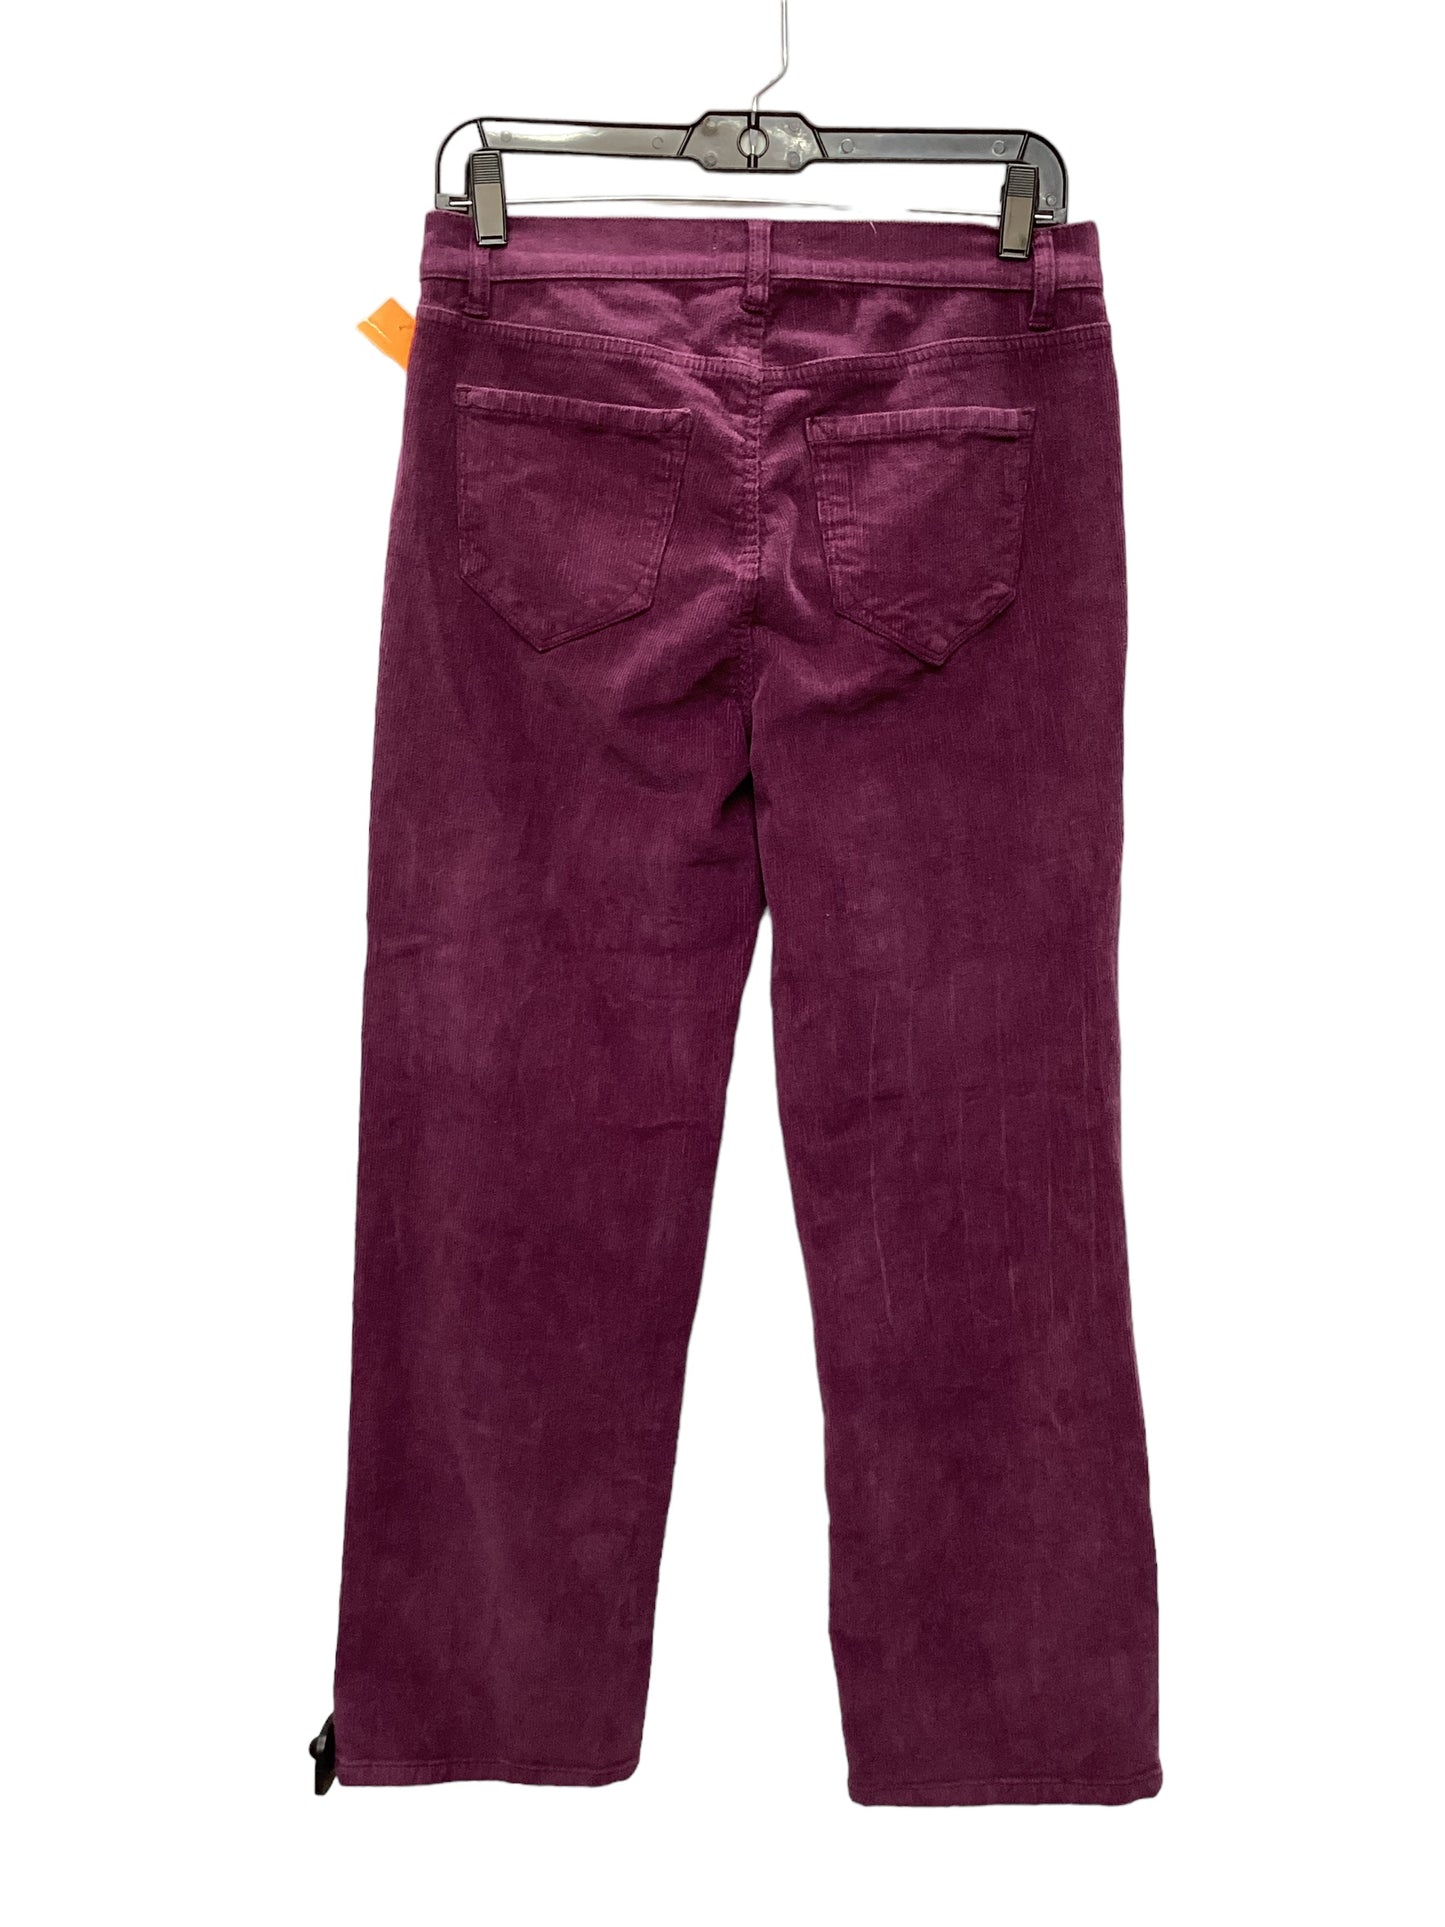 Pants Corduroy By Kensie  Size: 6